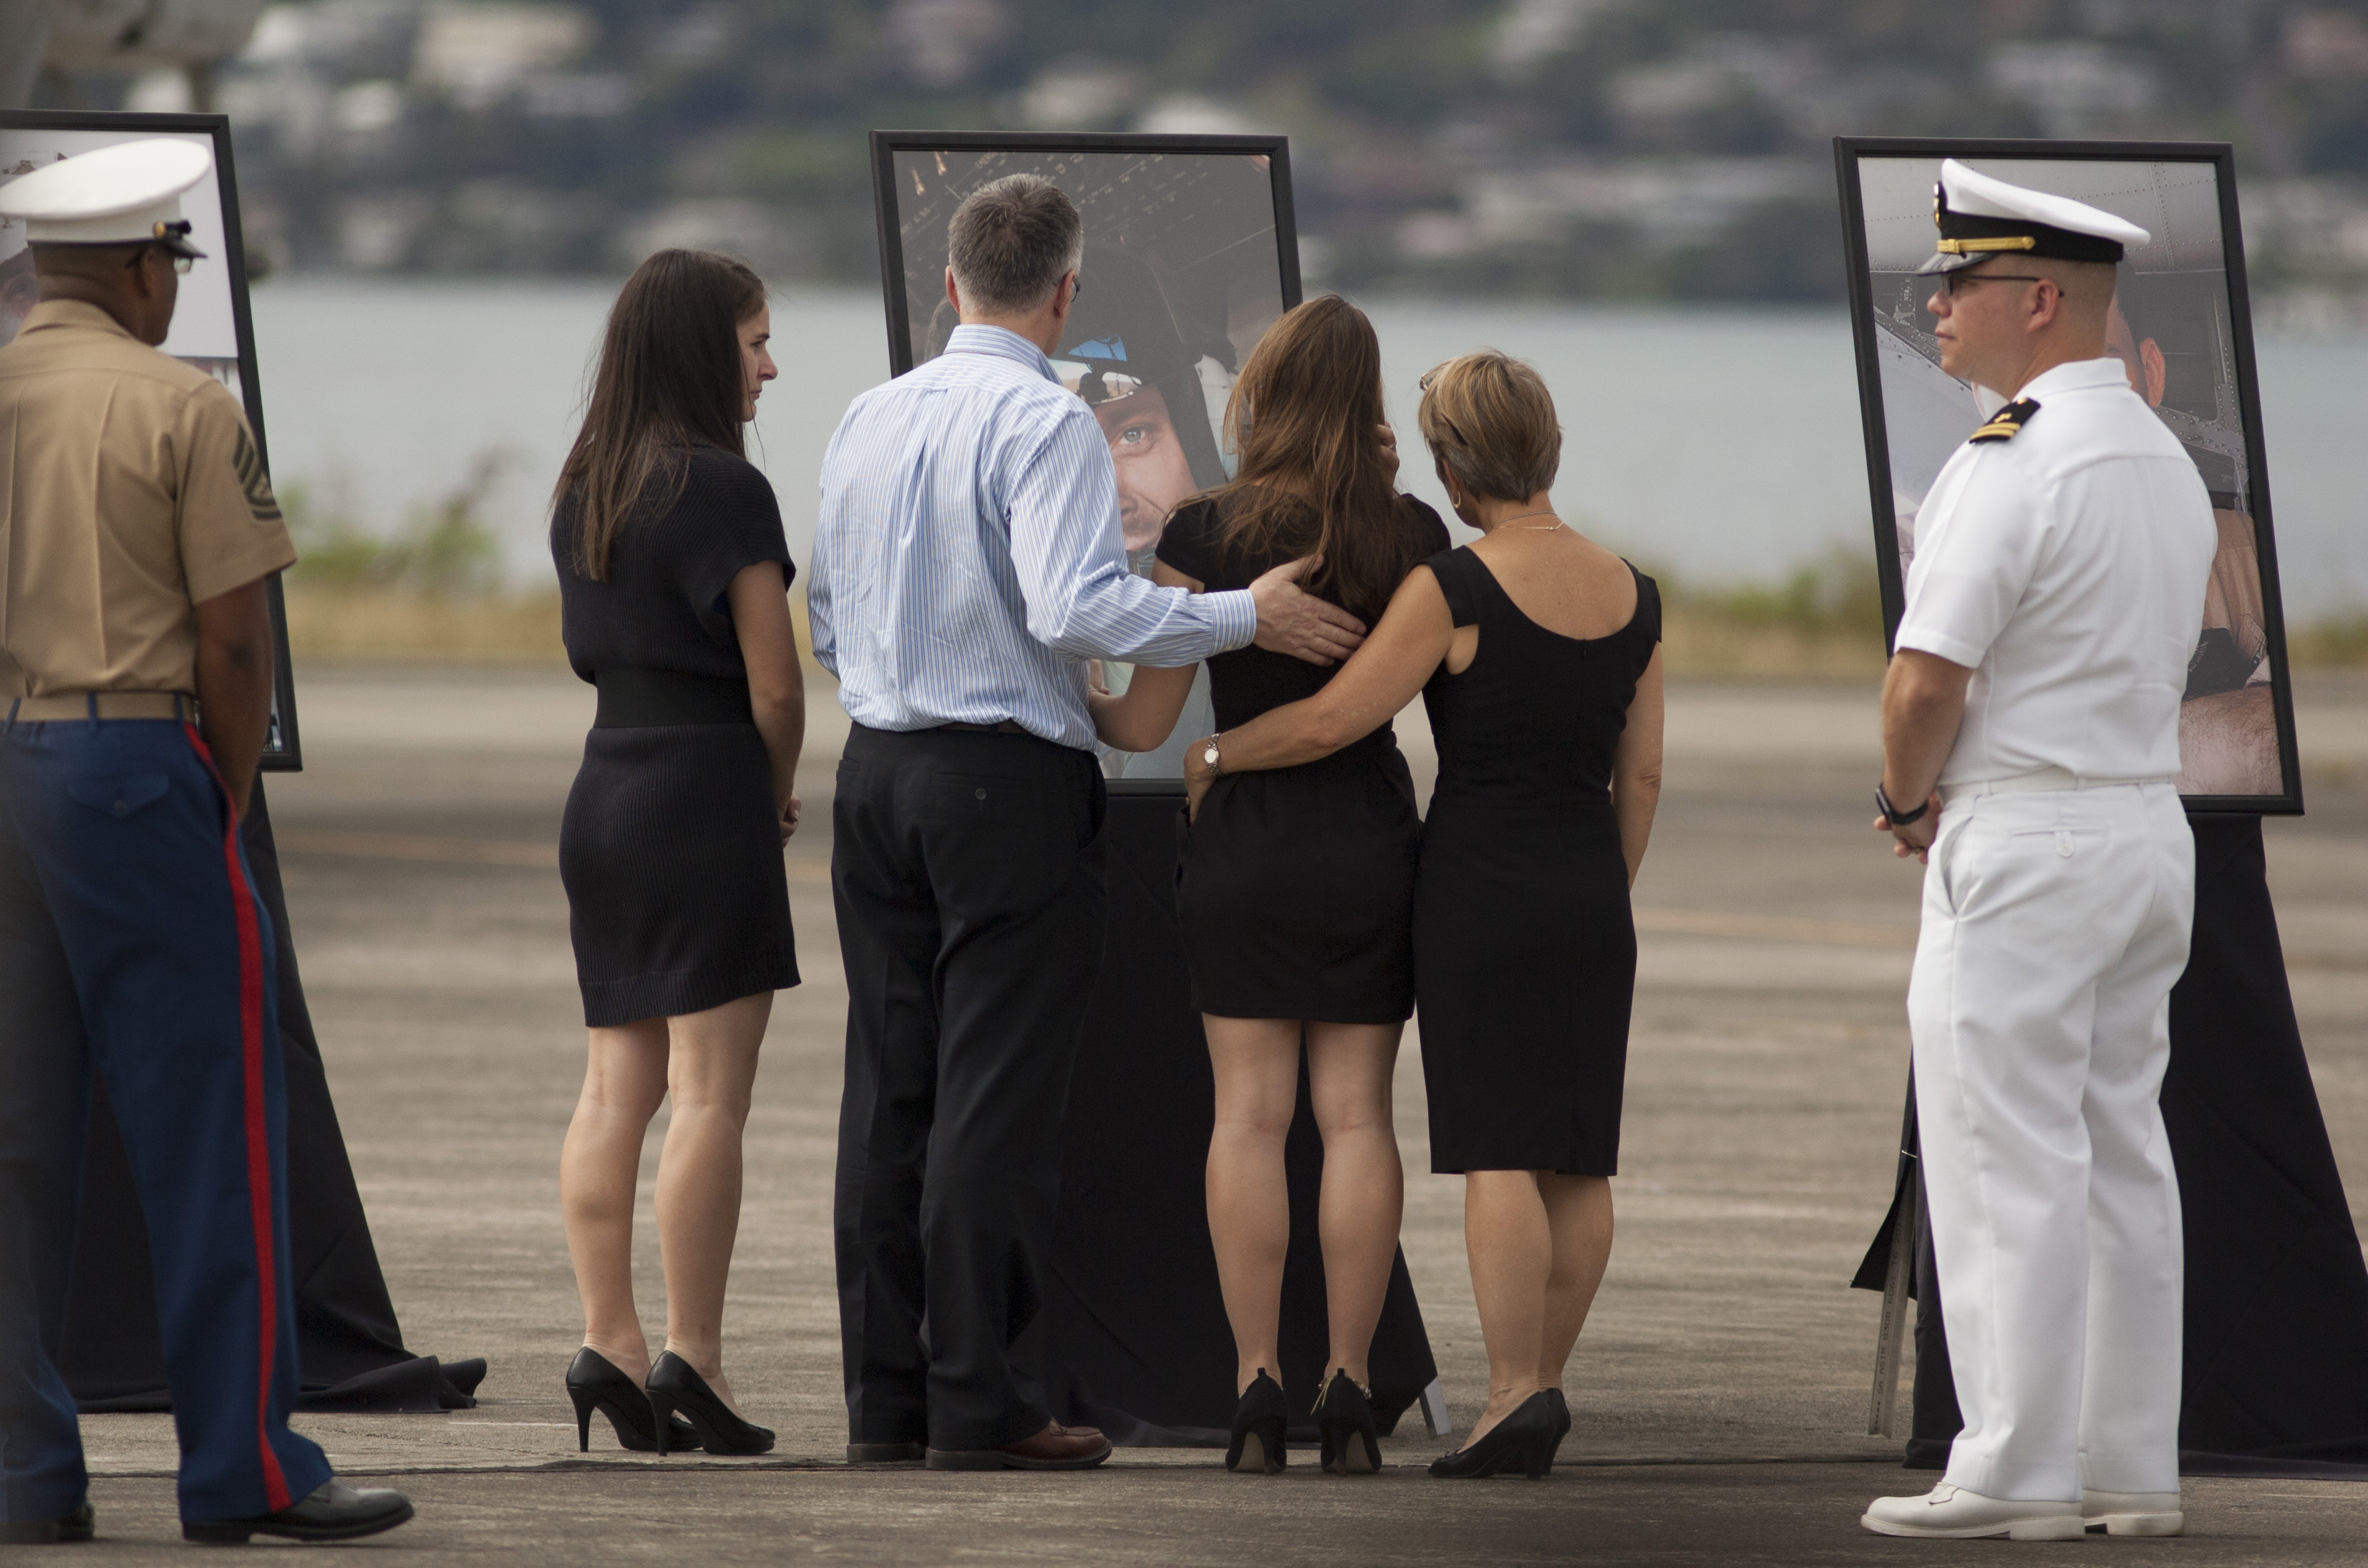 Memorial honors 12 Marines killed in Hawaii, including Oregonian | KATU